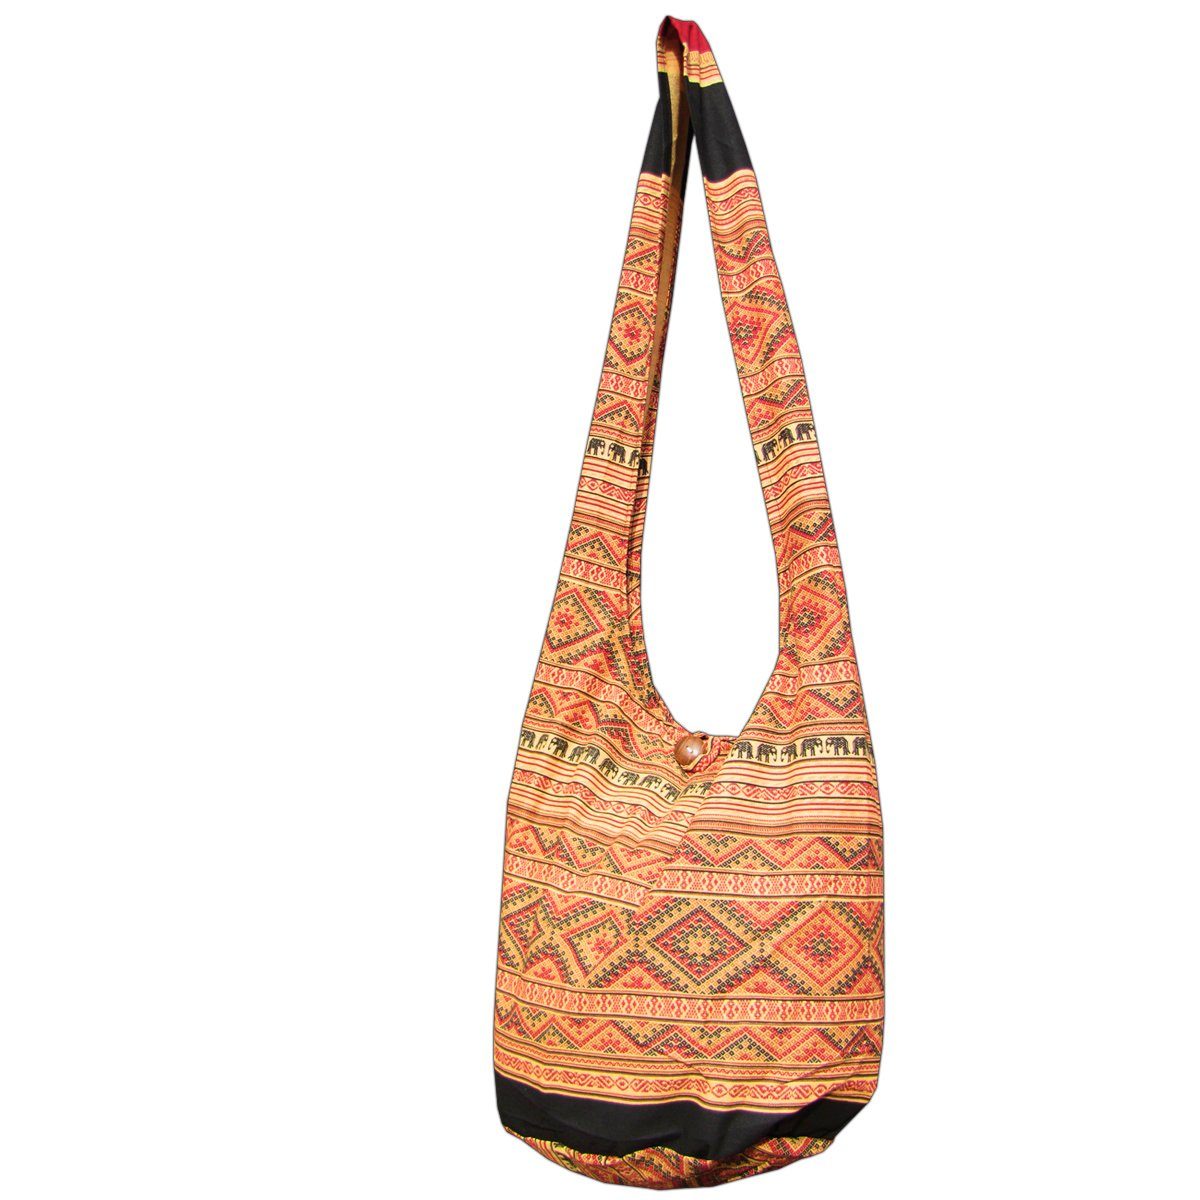 Größen, Beigeton Beuteltasche in PANASIAM aus 100% Strandtasche Umhängetasche Elefant oder Wickeltasche als Baumwolle 2 geeignet Handtasche Schultertasche Schulterbeutel